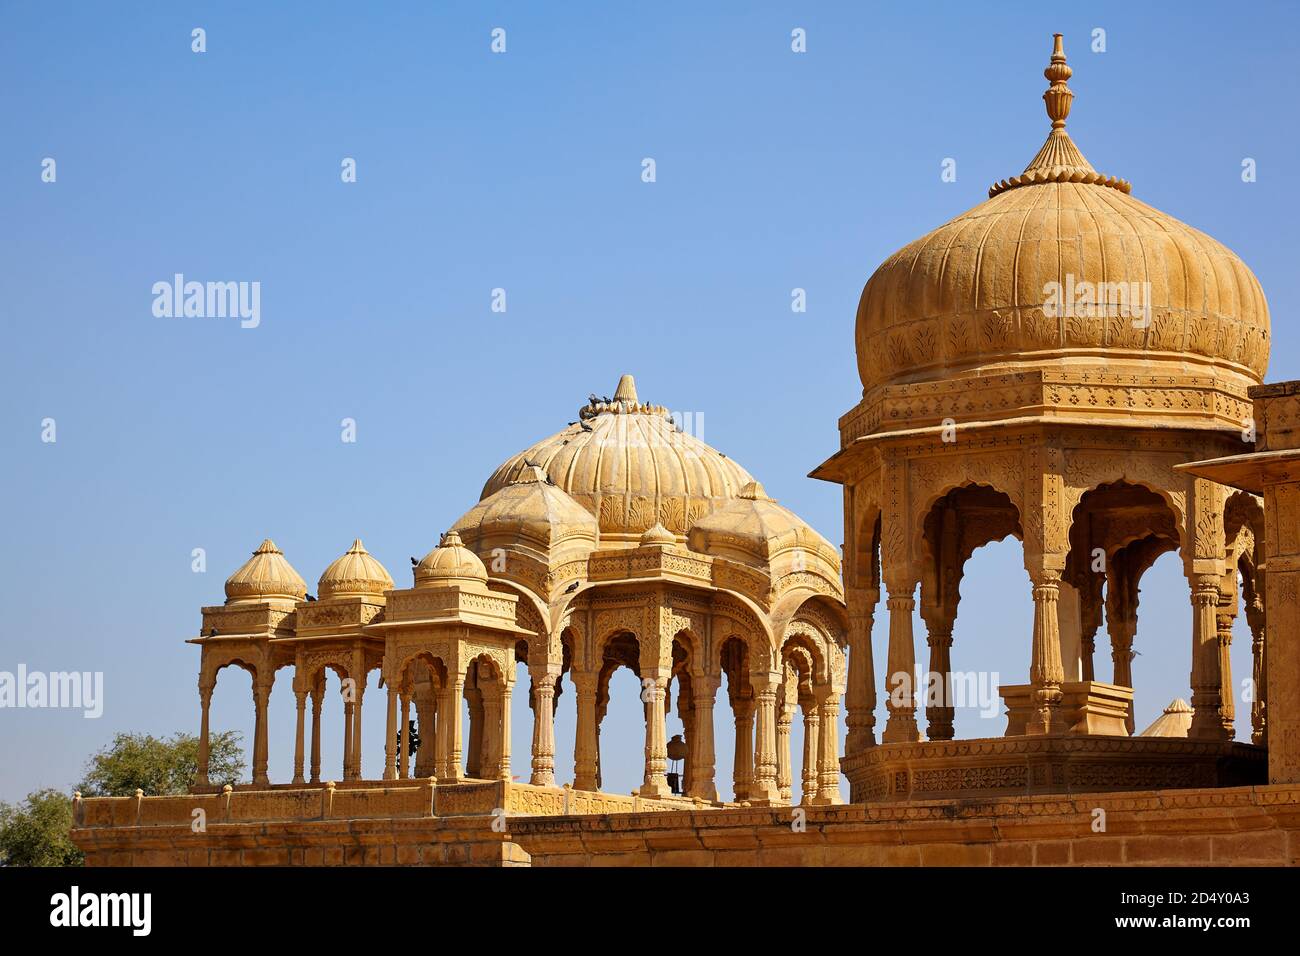 Foto di Chartis, mausoleo della tomba indù o cenotafs di Bada Bagh nel Rajastan. Architettura indo-islamica. Jaisalmer, India. Foto Stock